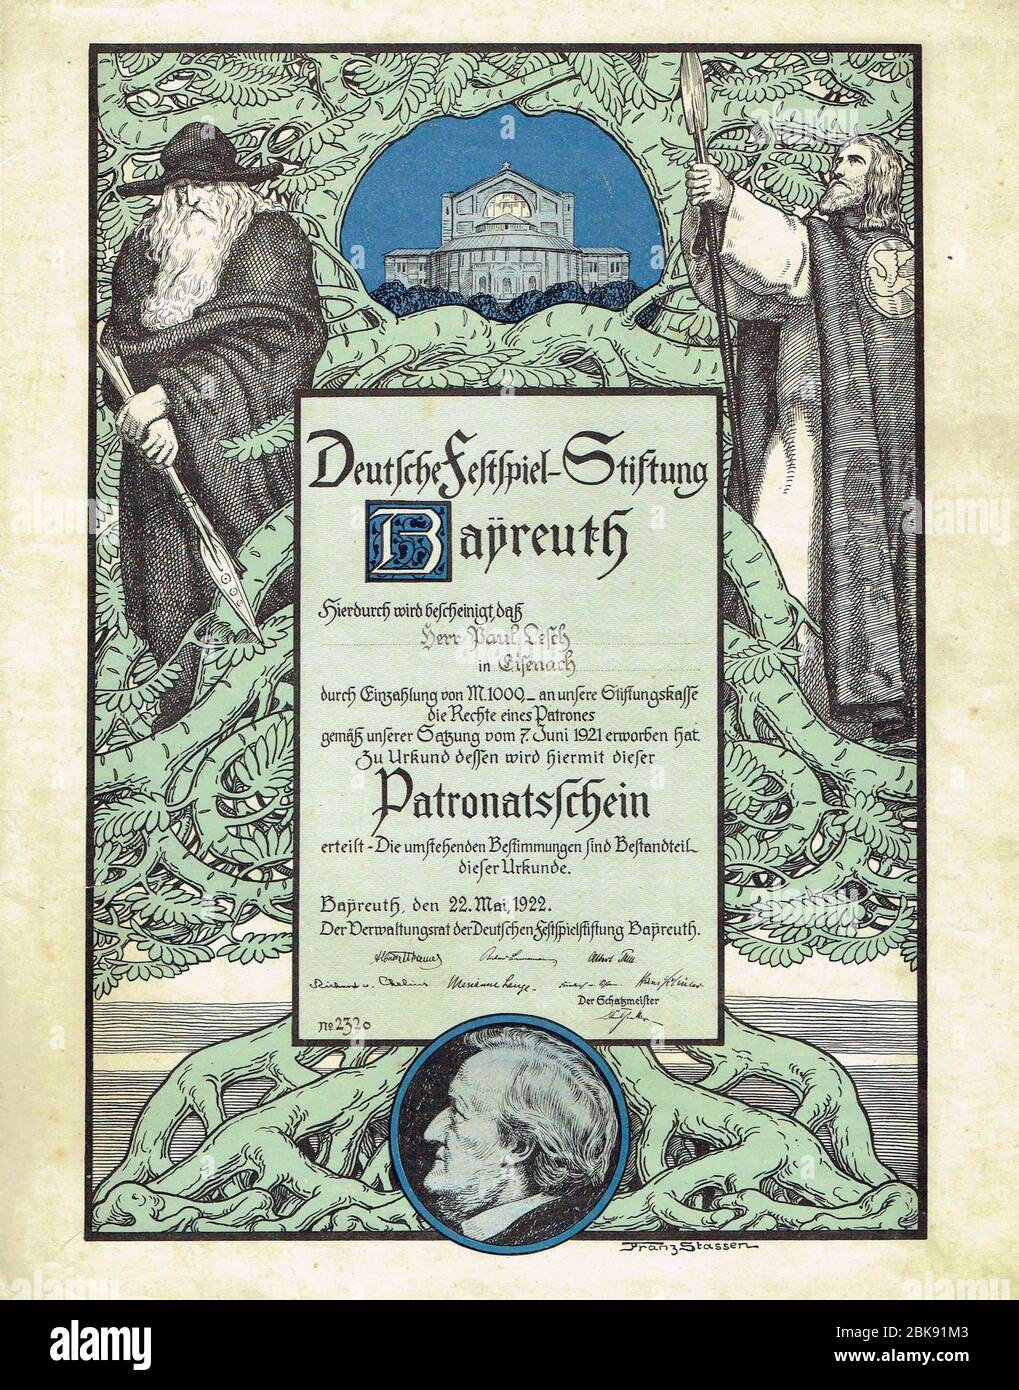 Certificat de patronage de la Deutsche Festspiel-Stiftung, délivré le 22 mai 1922 Banque D'Images